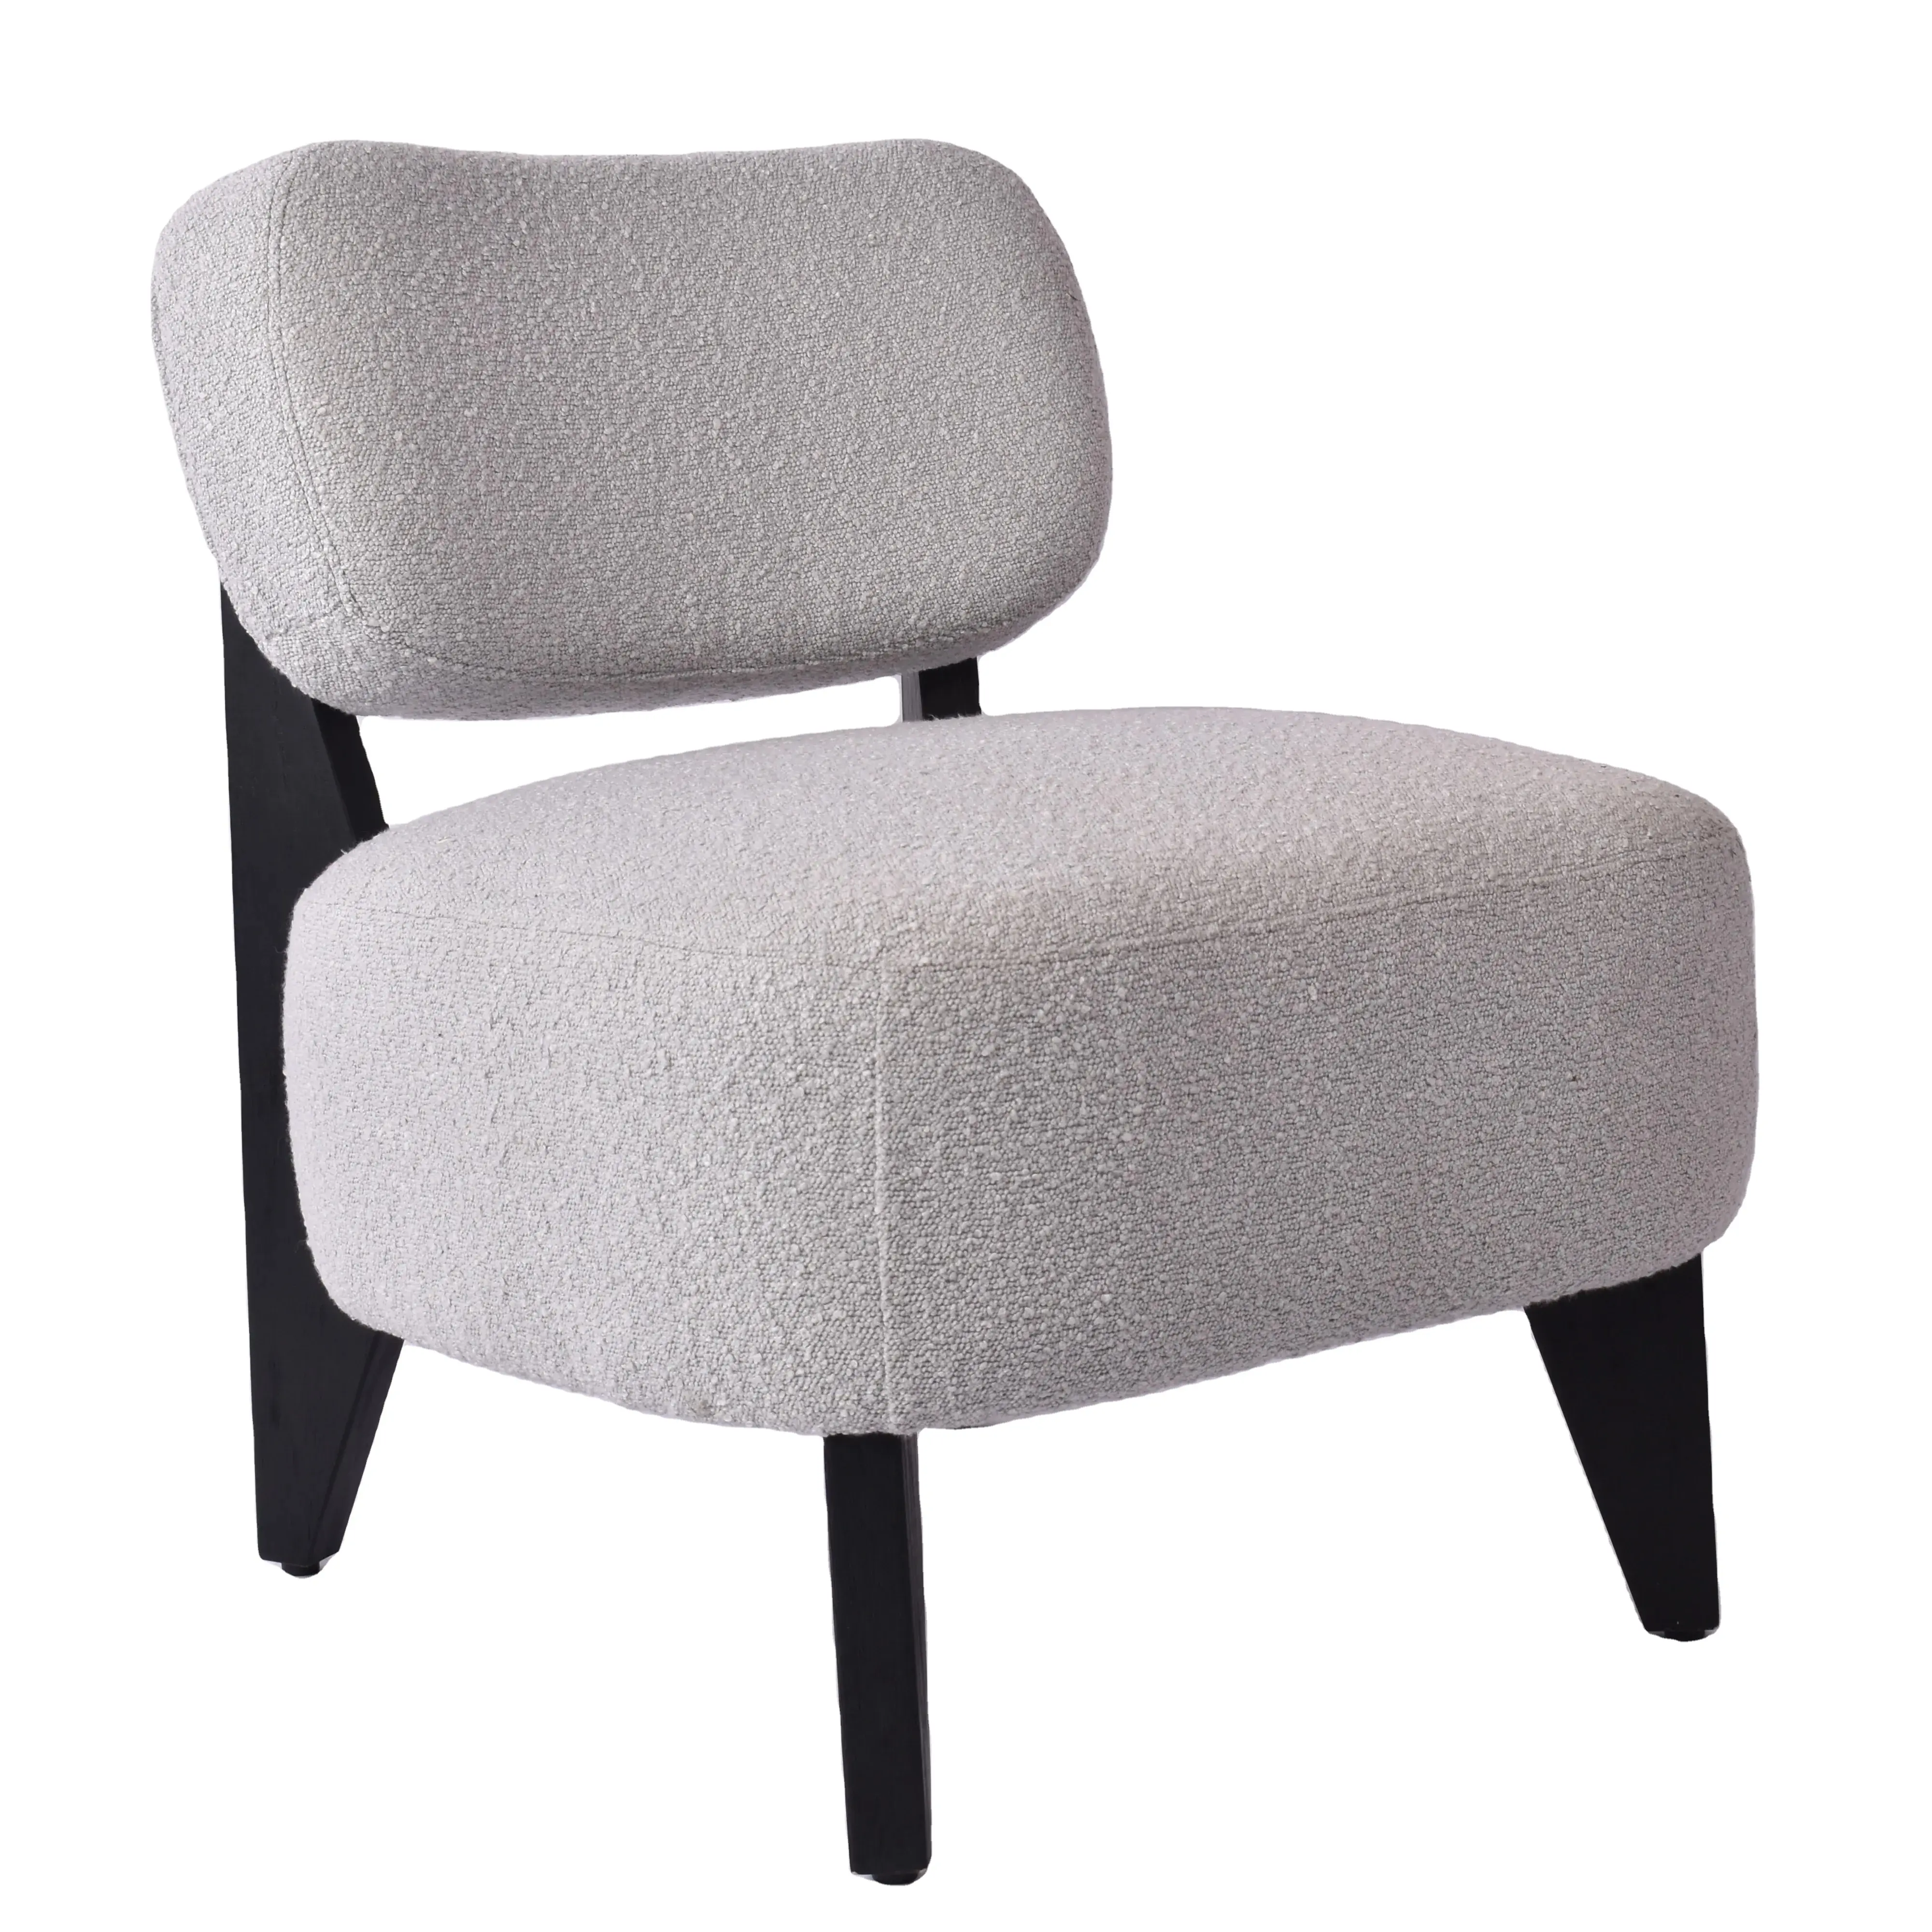 Chaise d'appoint moderne nordique en bois relax loisirs canapé simple boucle chaise longue pour salon